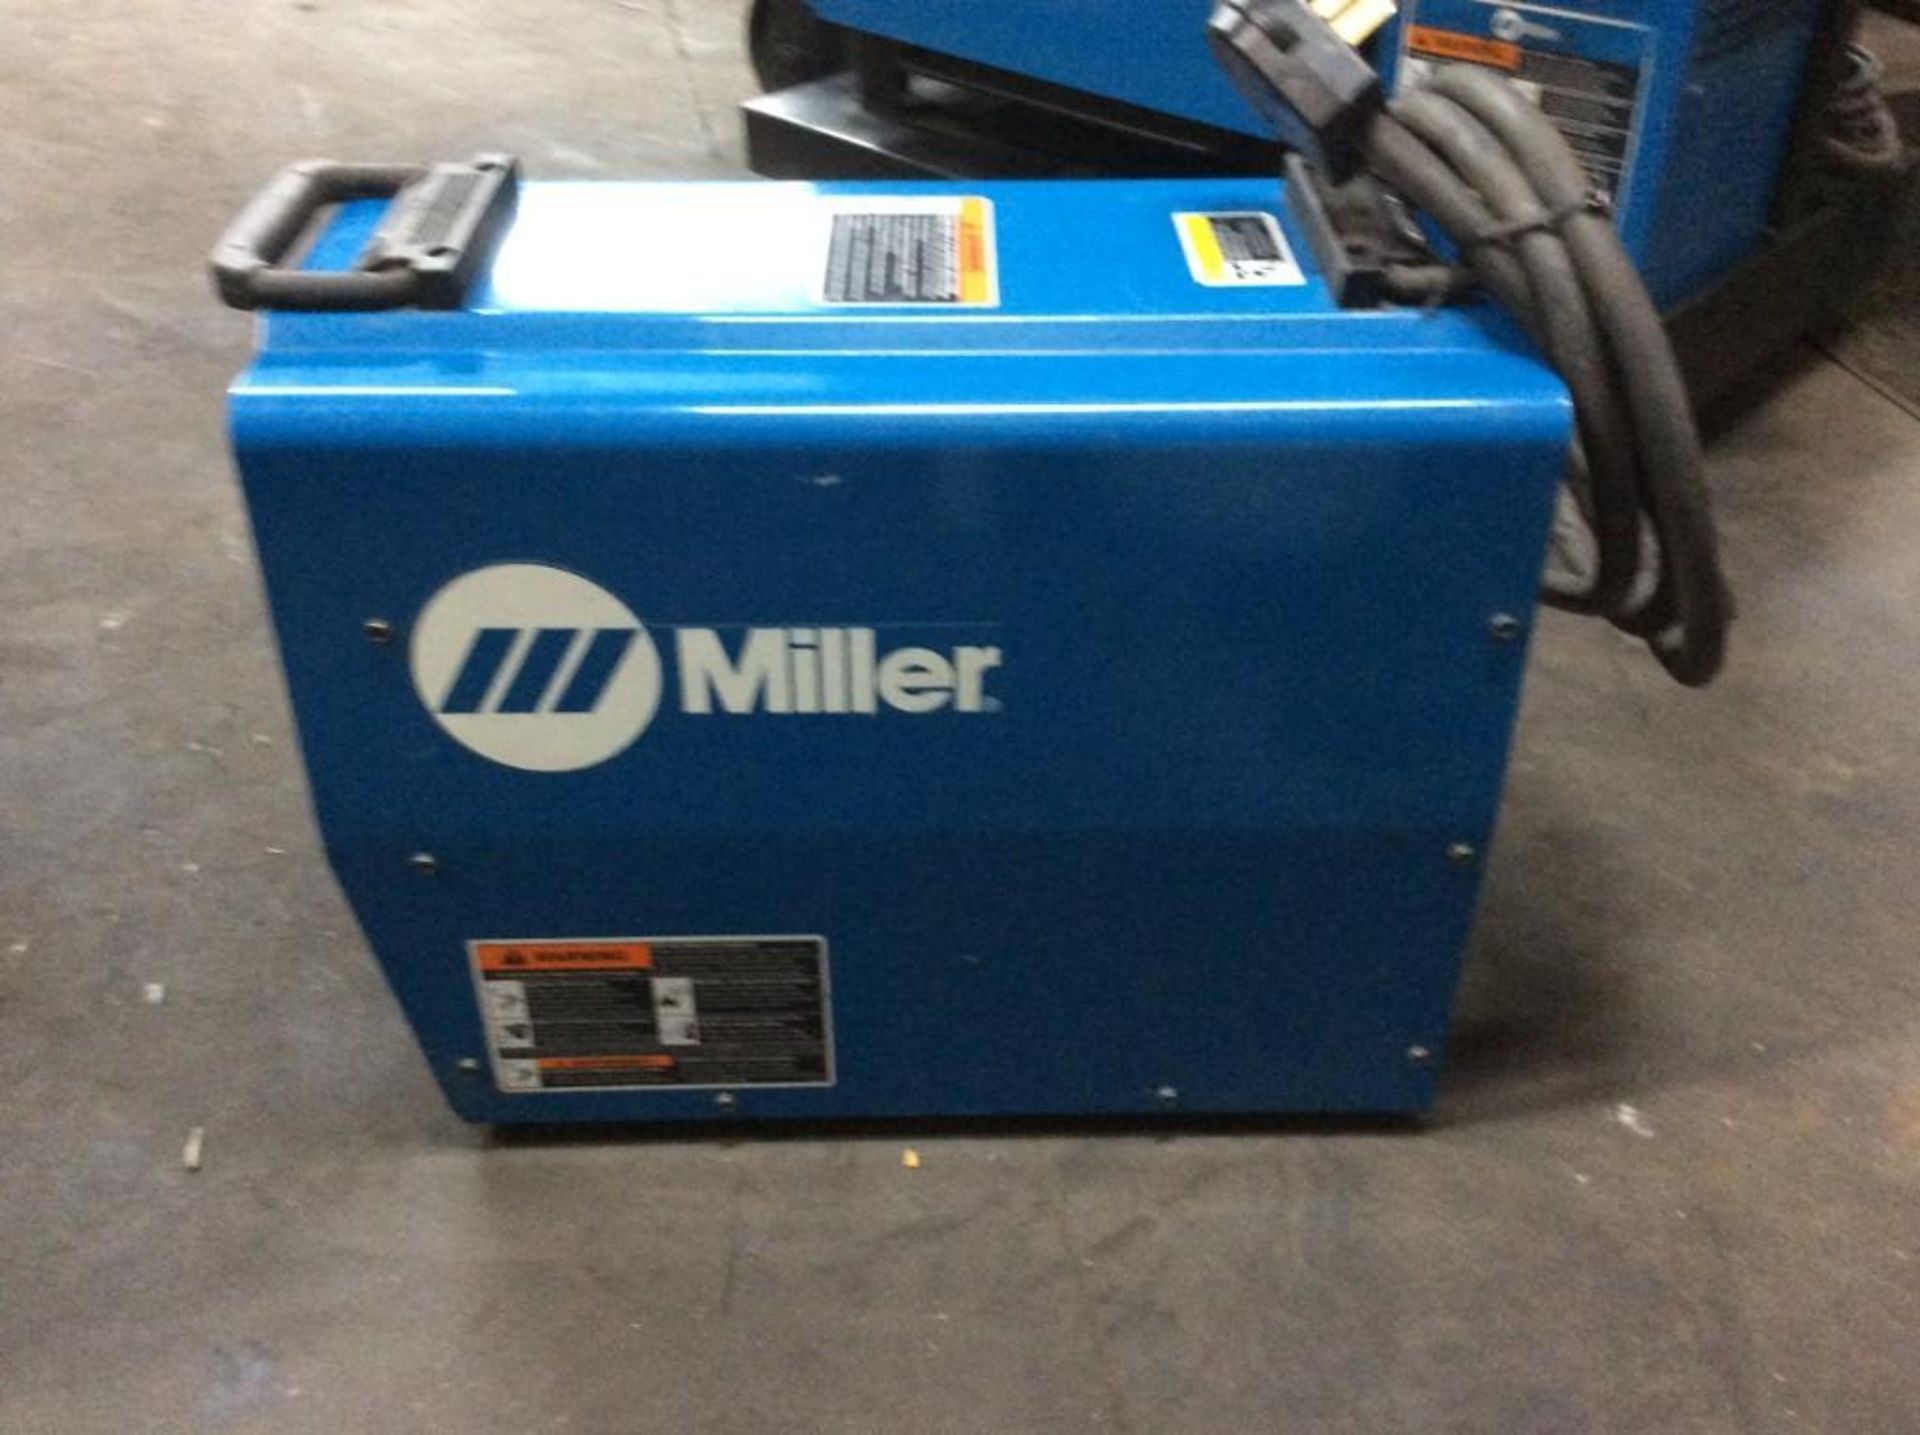 Miller XMT 304 Power Source MIG Welder - Image 2 of 3